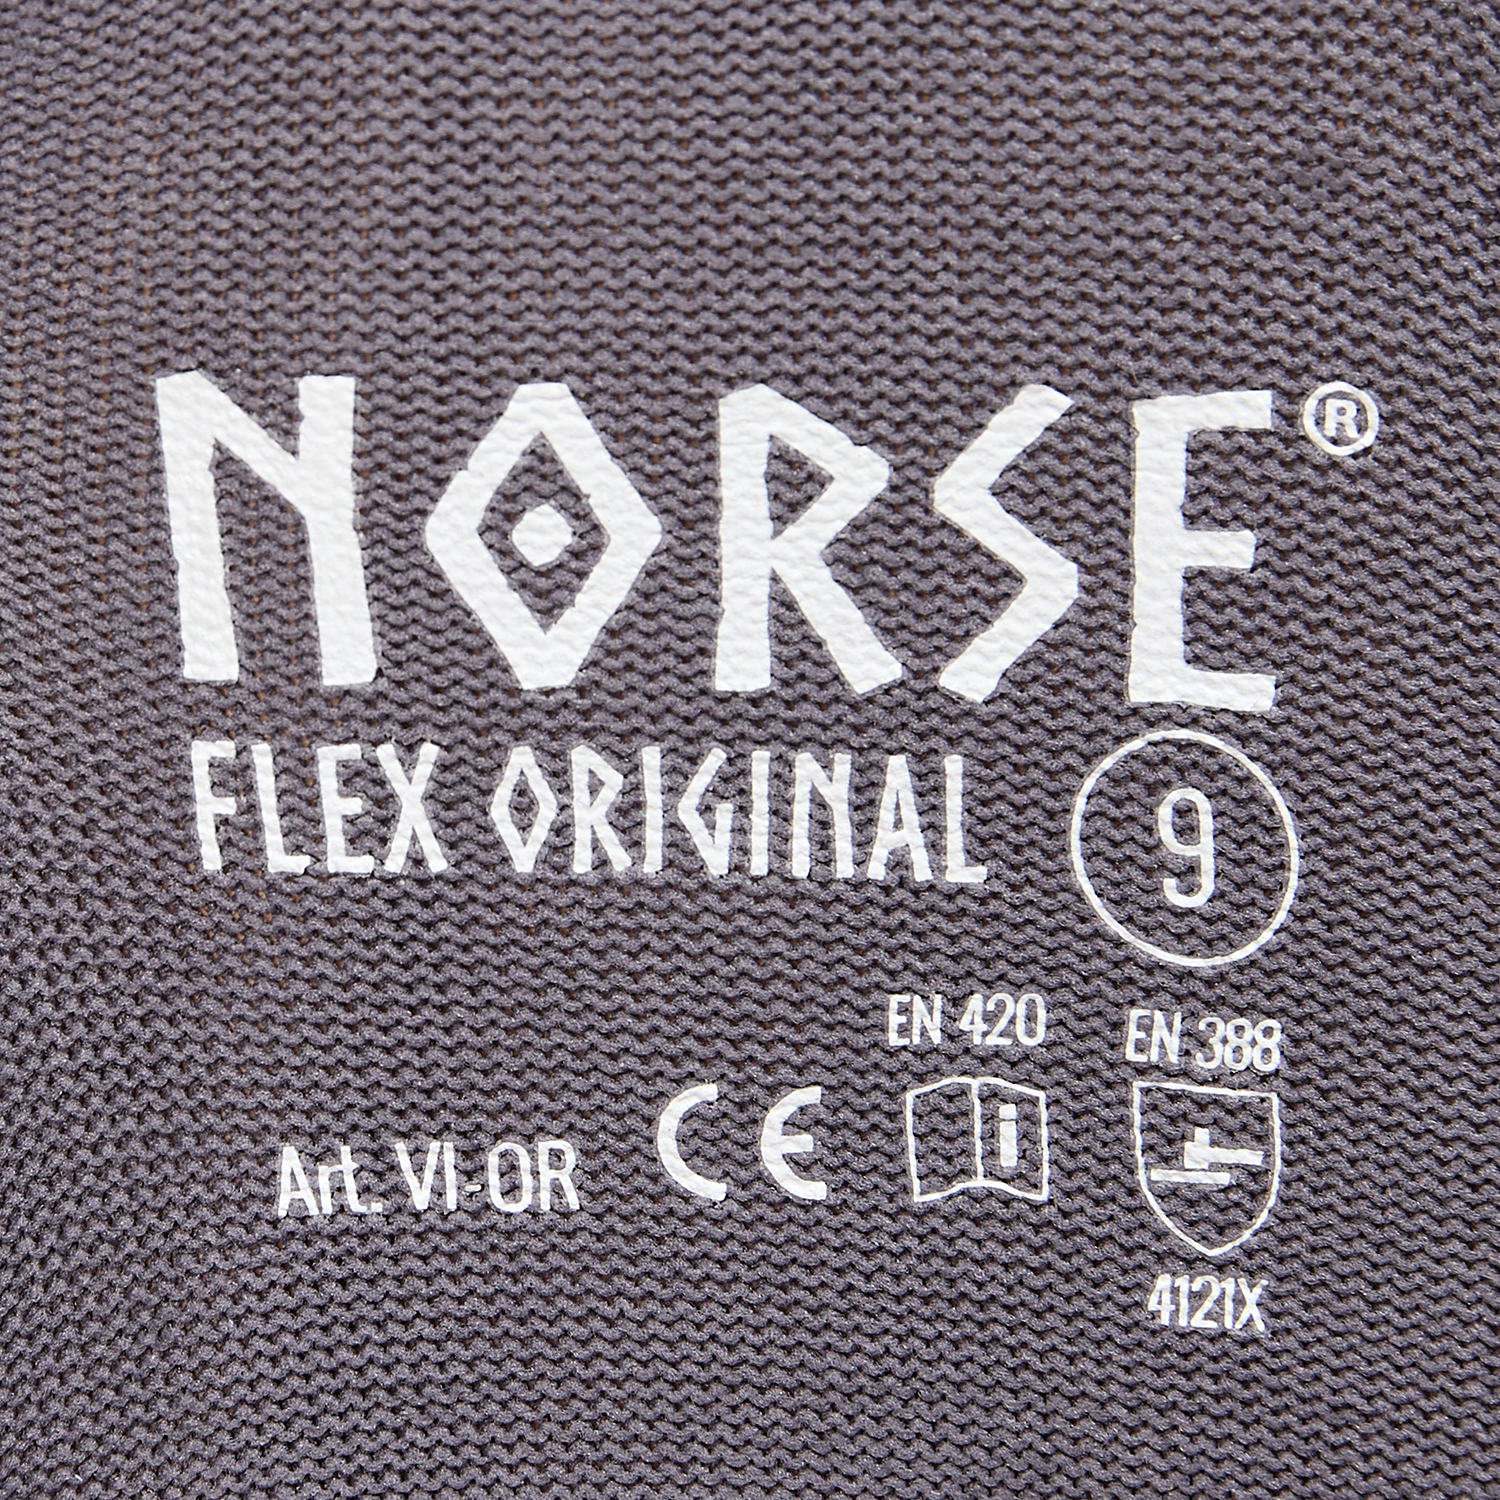 NORSE Flex Original montagehandschoenen maat 7